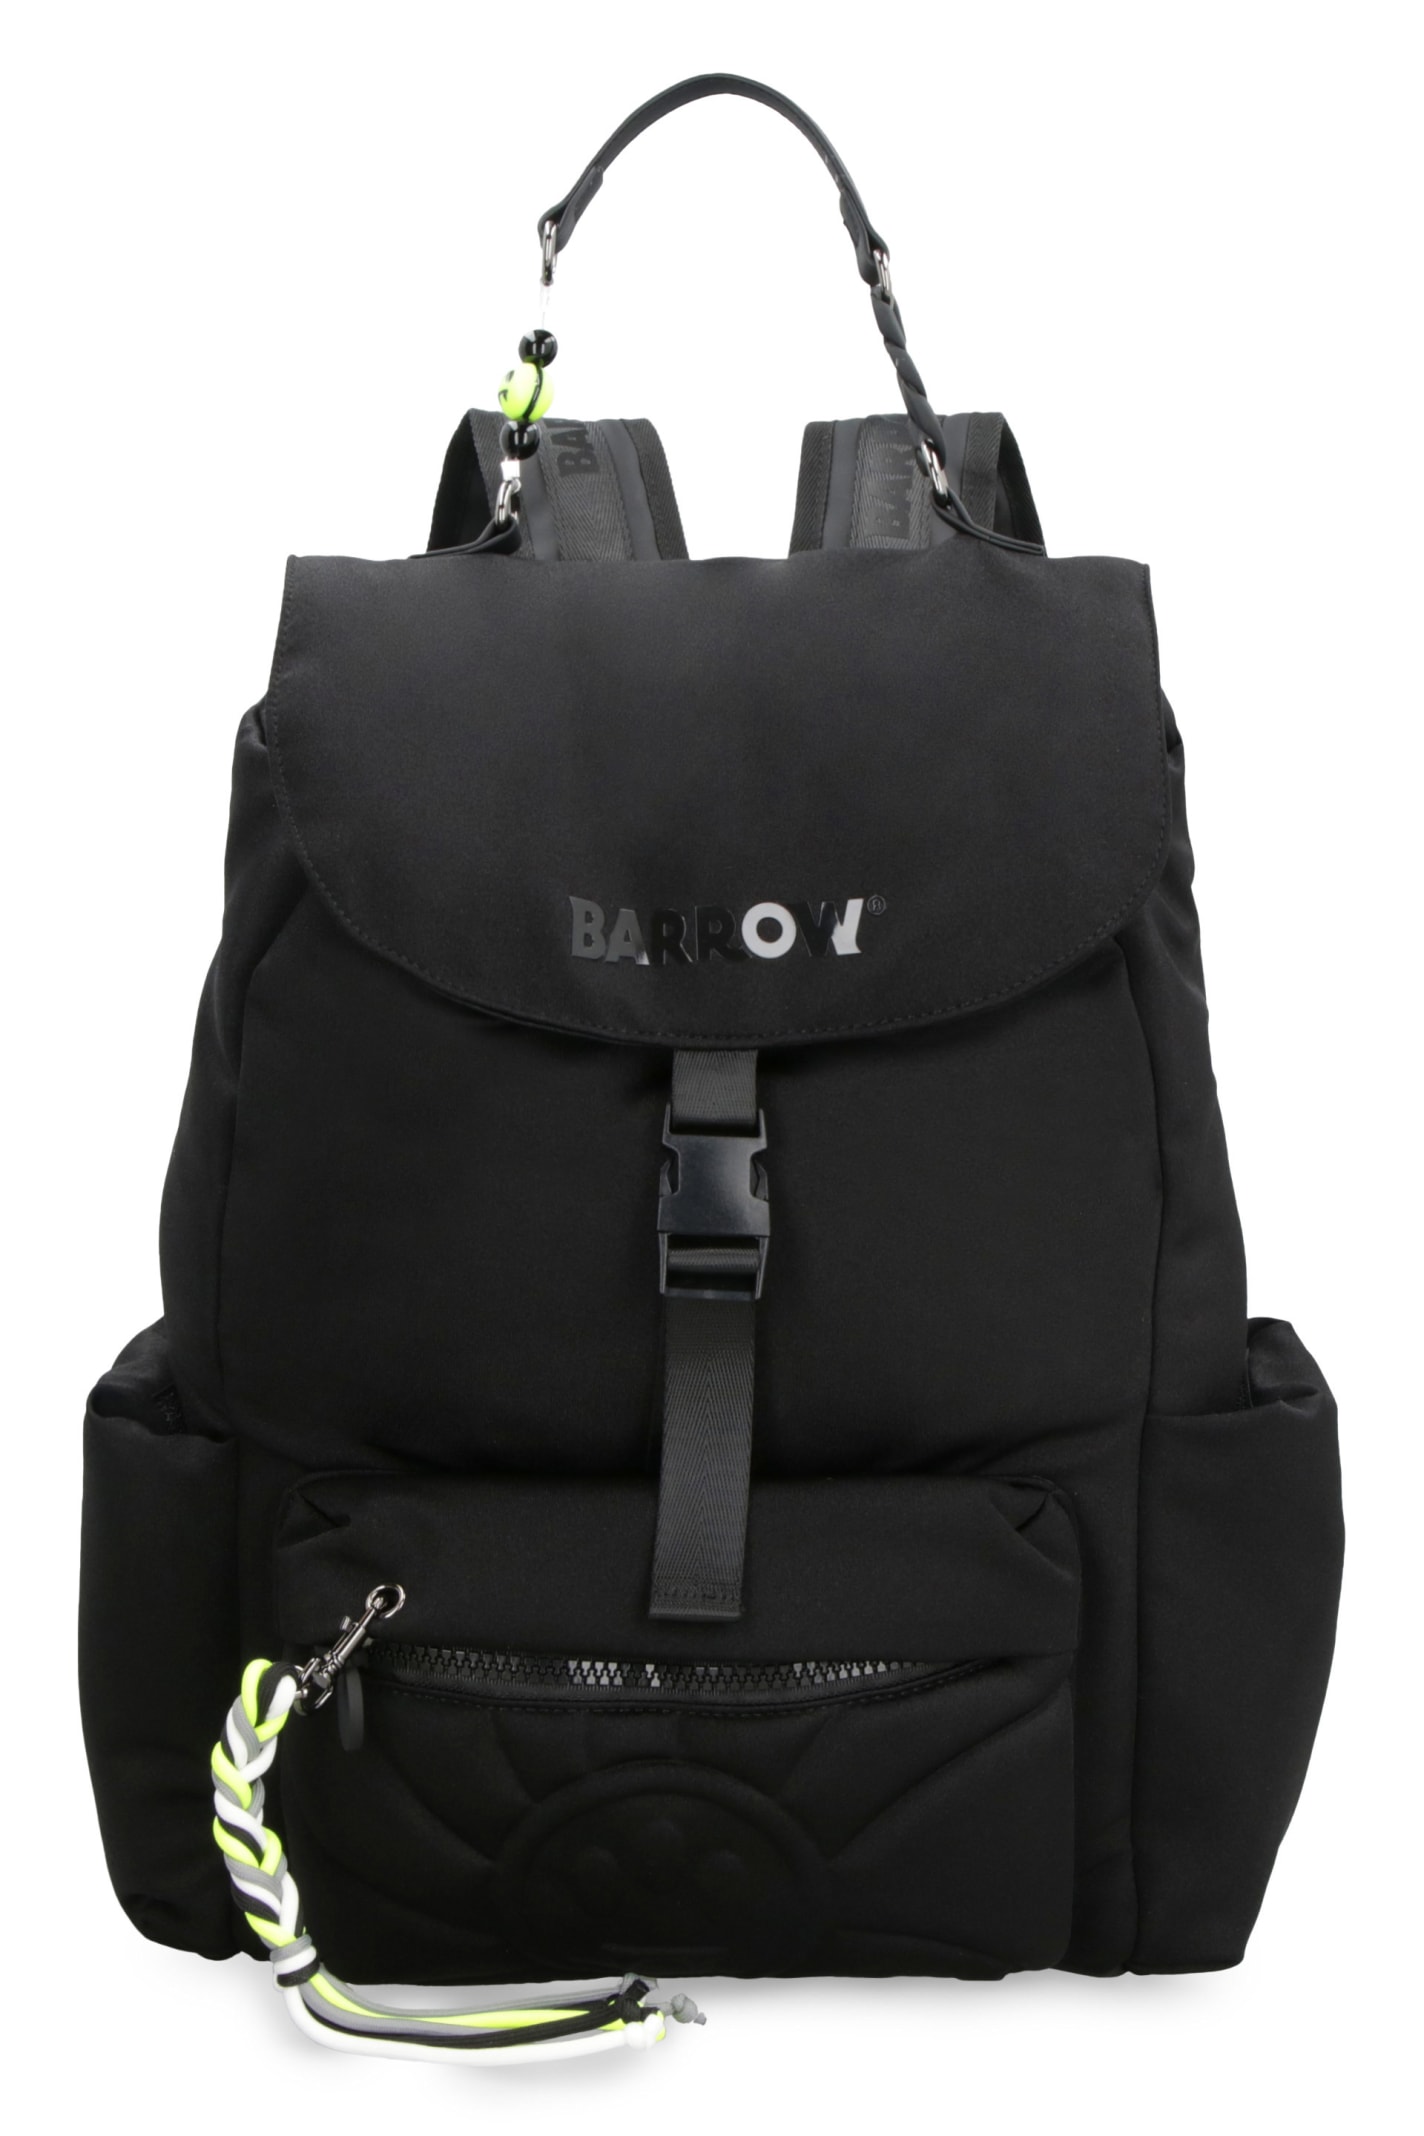 Barrow Jersey Backpack In Black